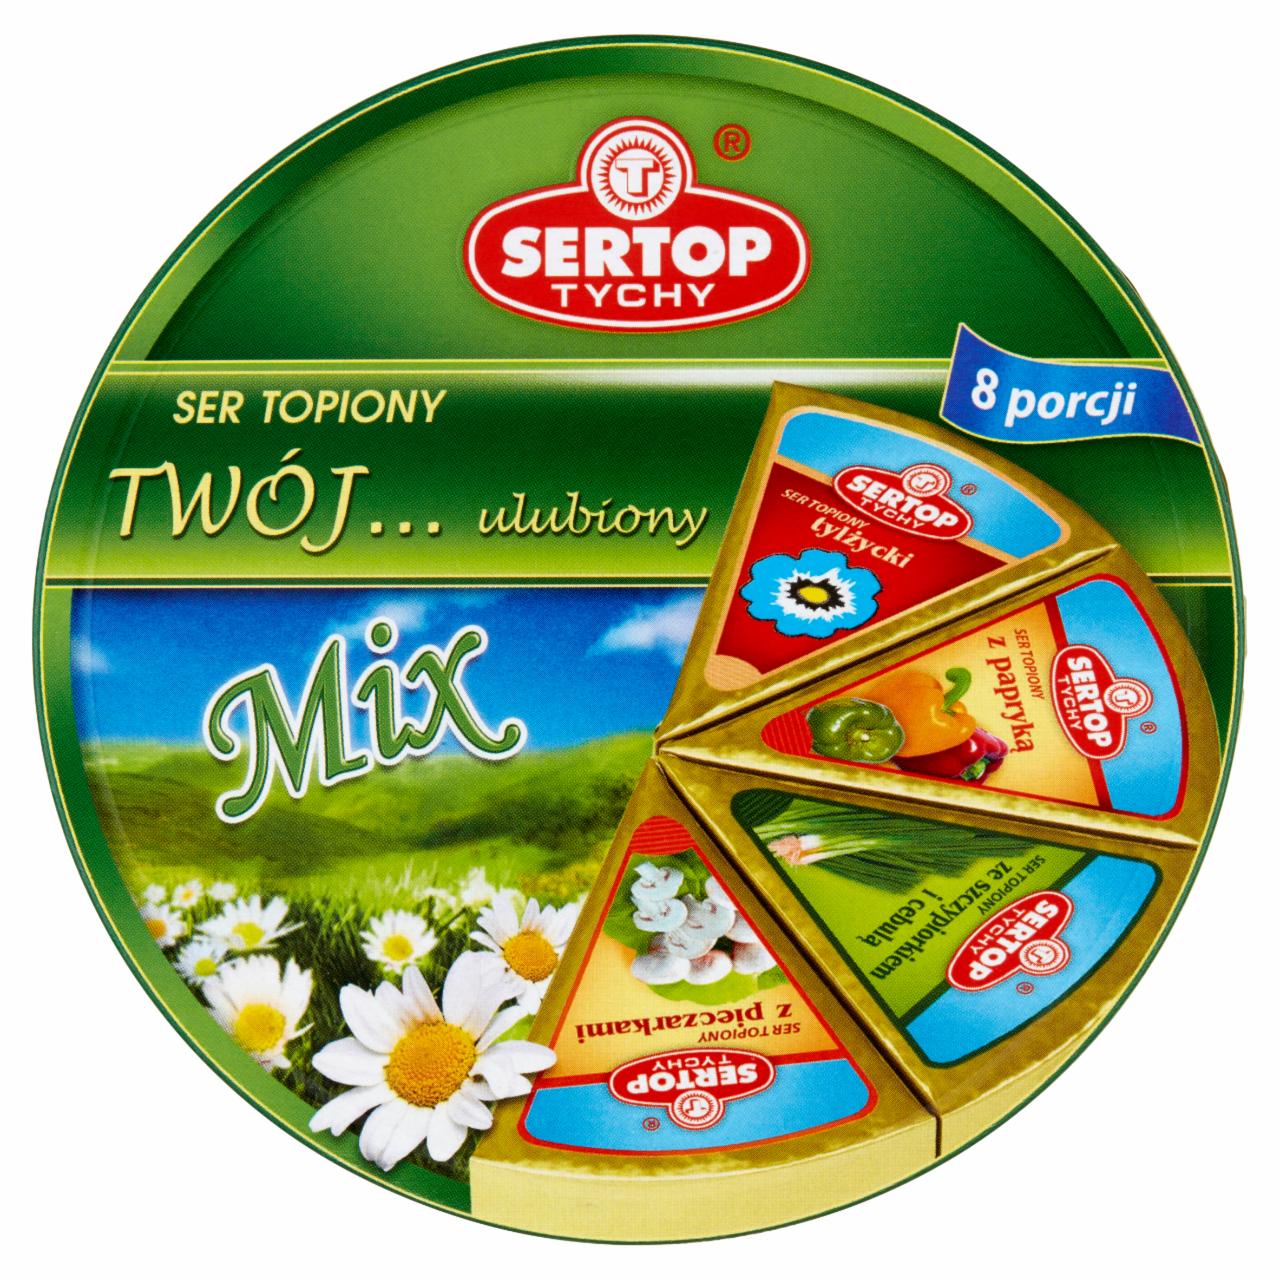 Zdjęcia - Sertop Tychy Twój... ulubiony Mix Ser topiony 140 g (8 x 17,5 g )